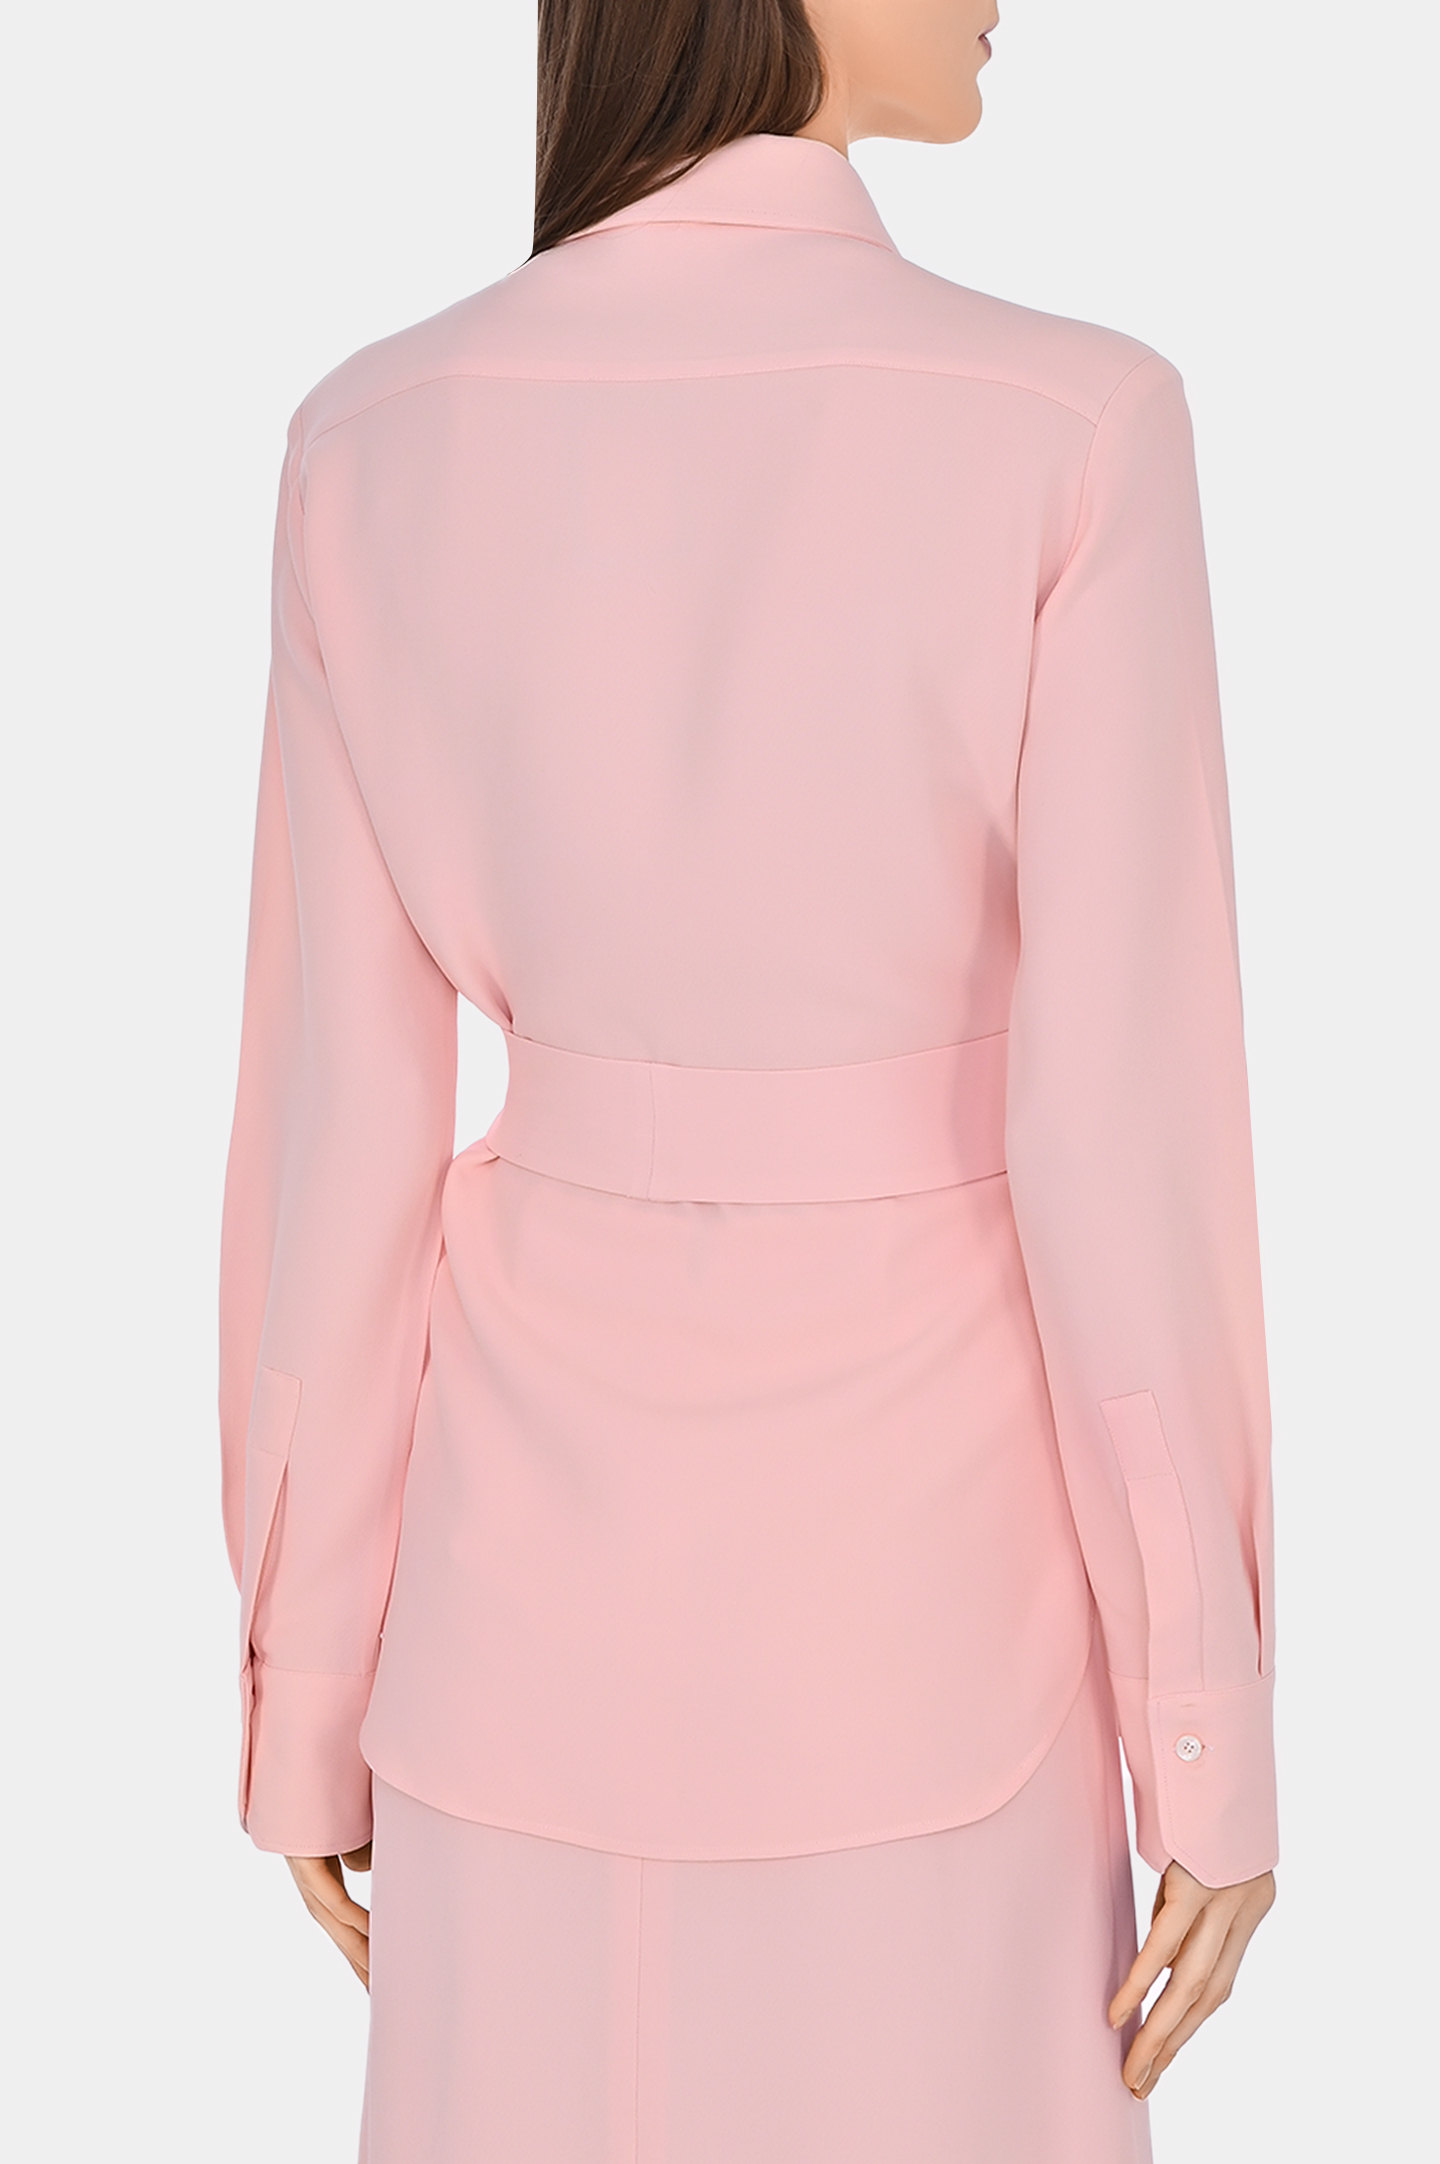 Блуза из вискозы с поясом KITON D48407K0562C0, цвет: Розовый, Женский